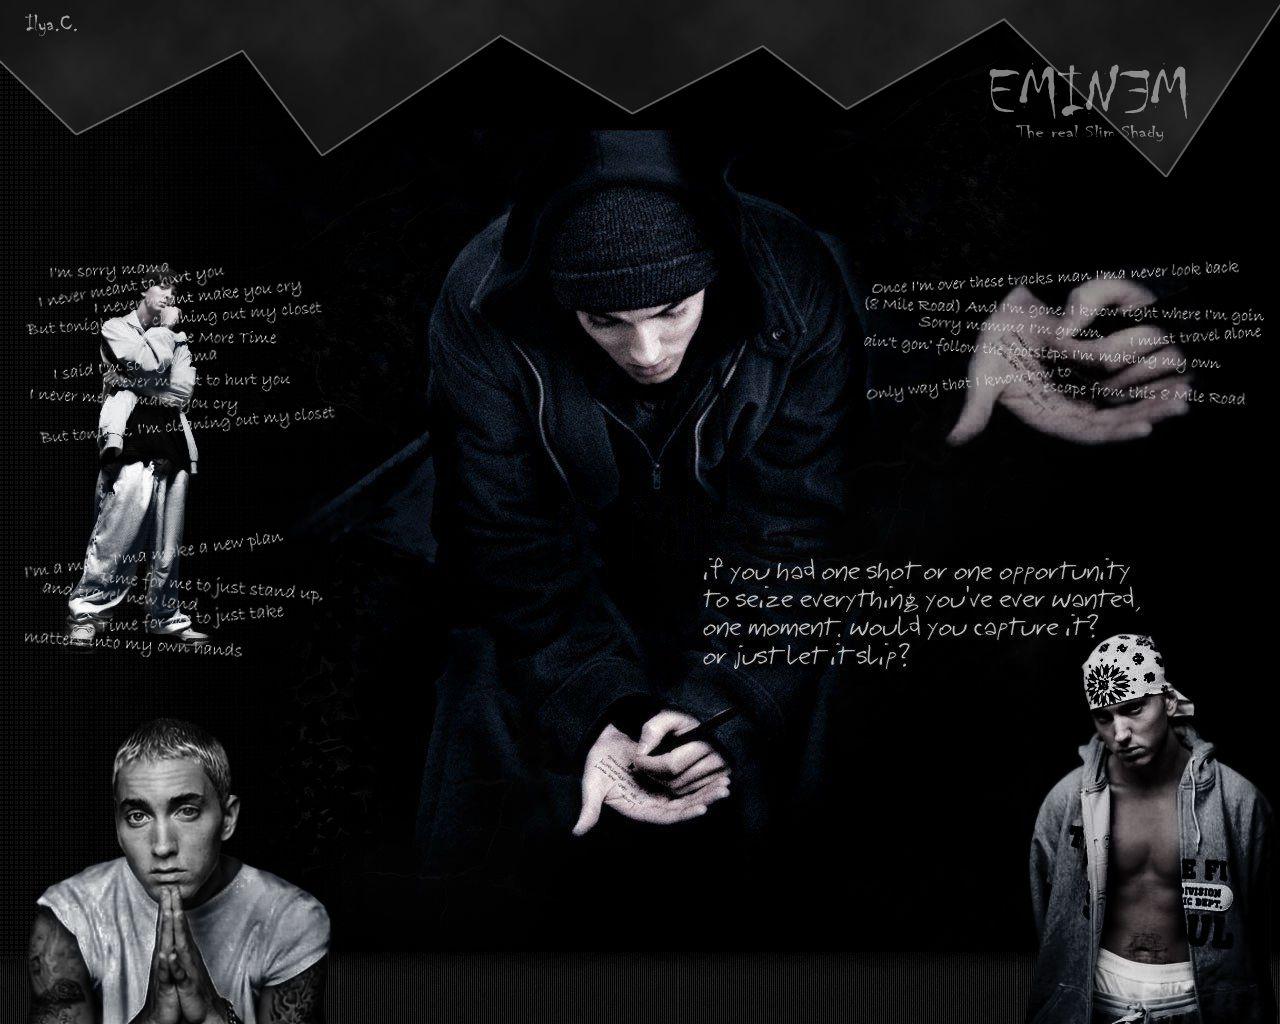 Eminem Image Quote Wallpaper